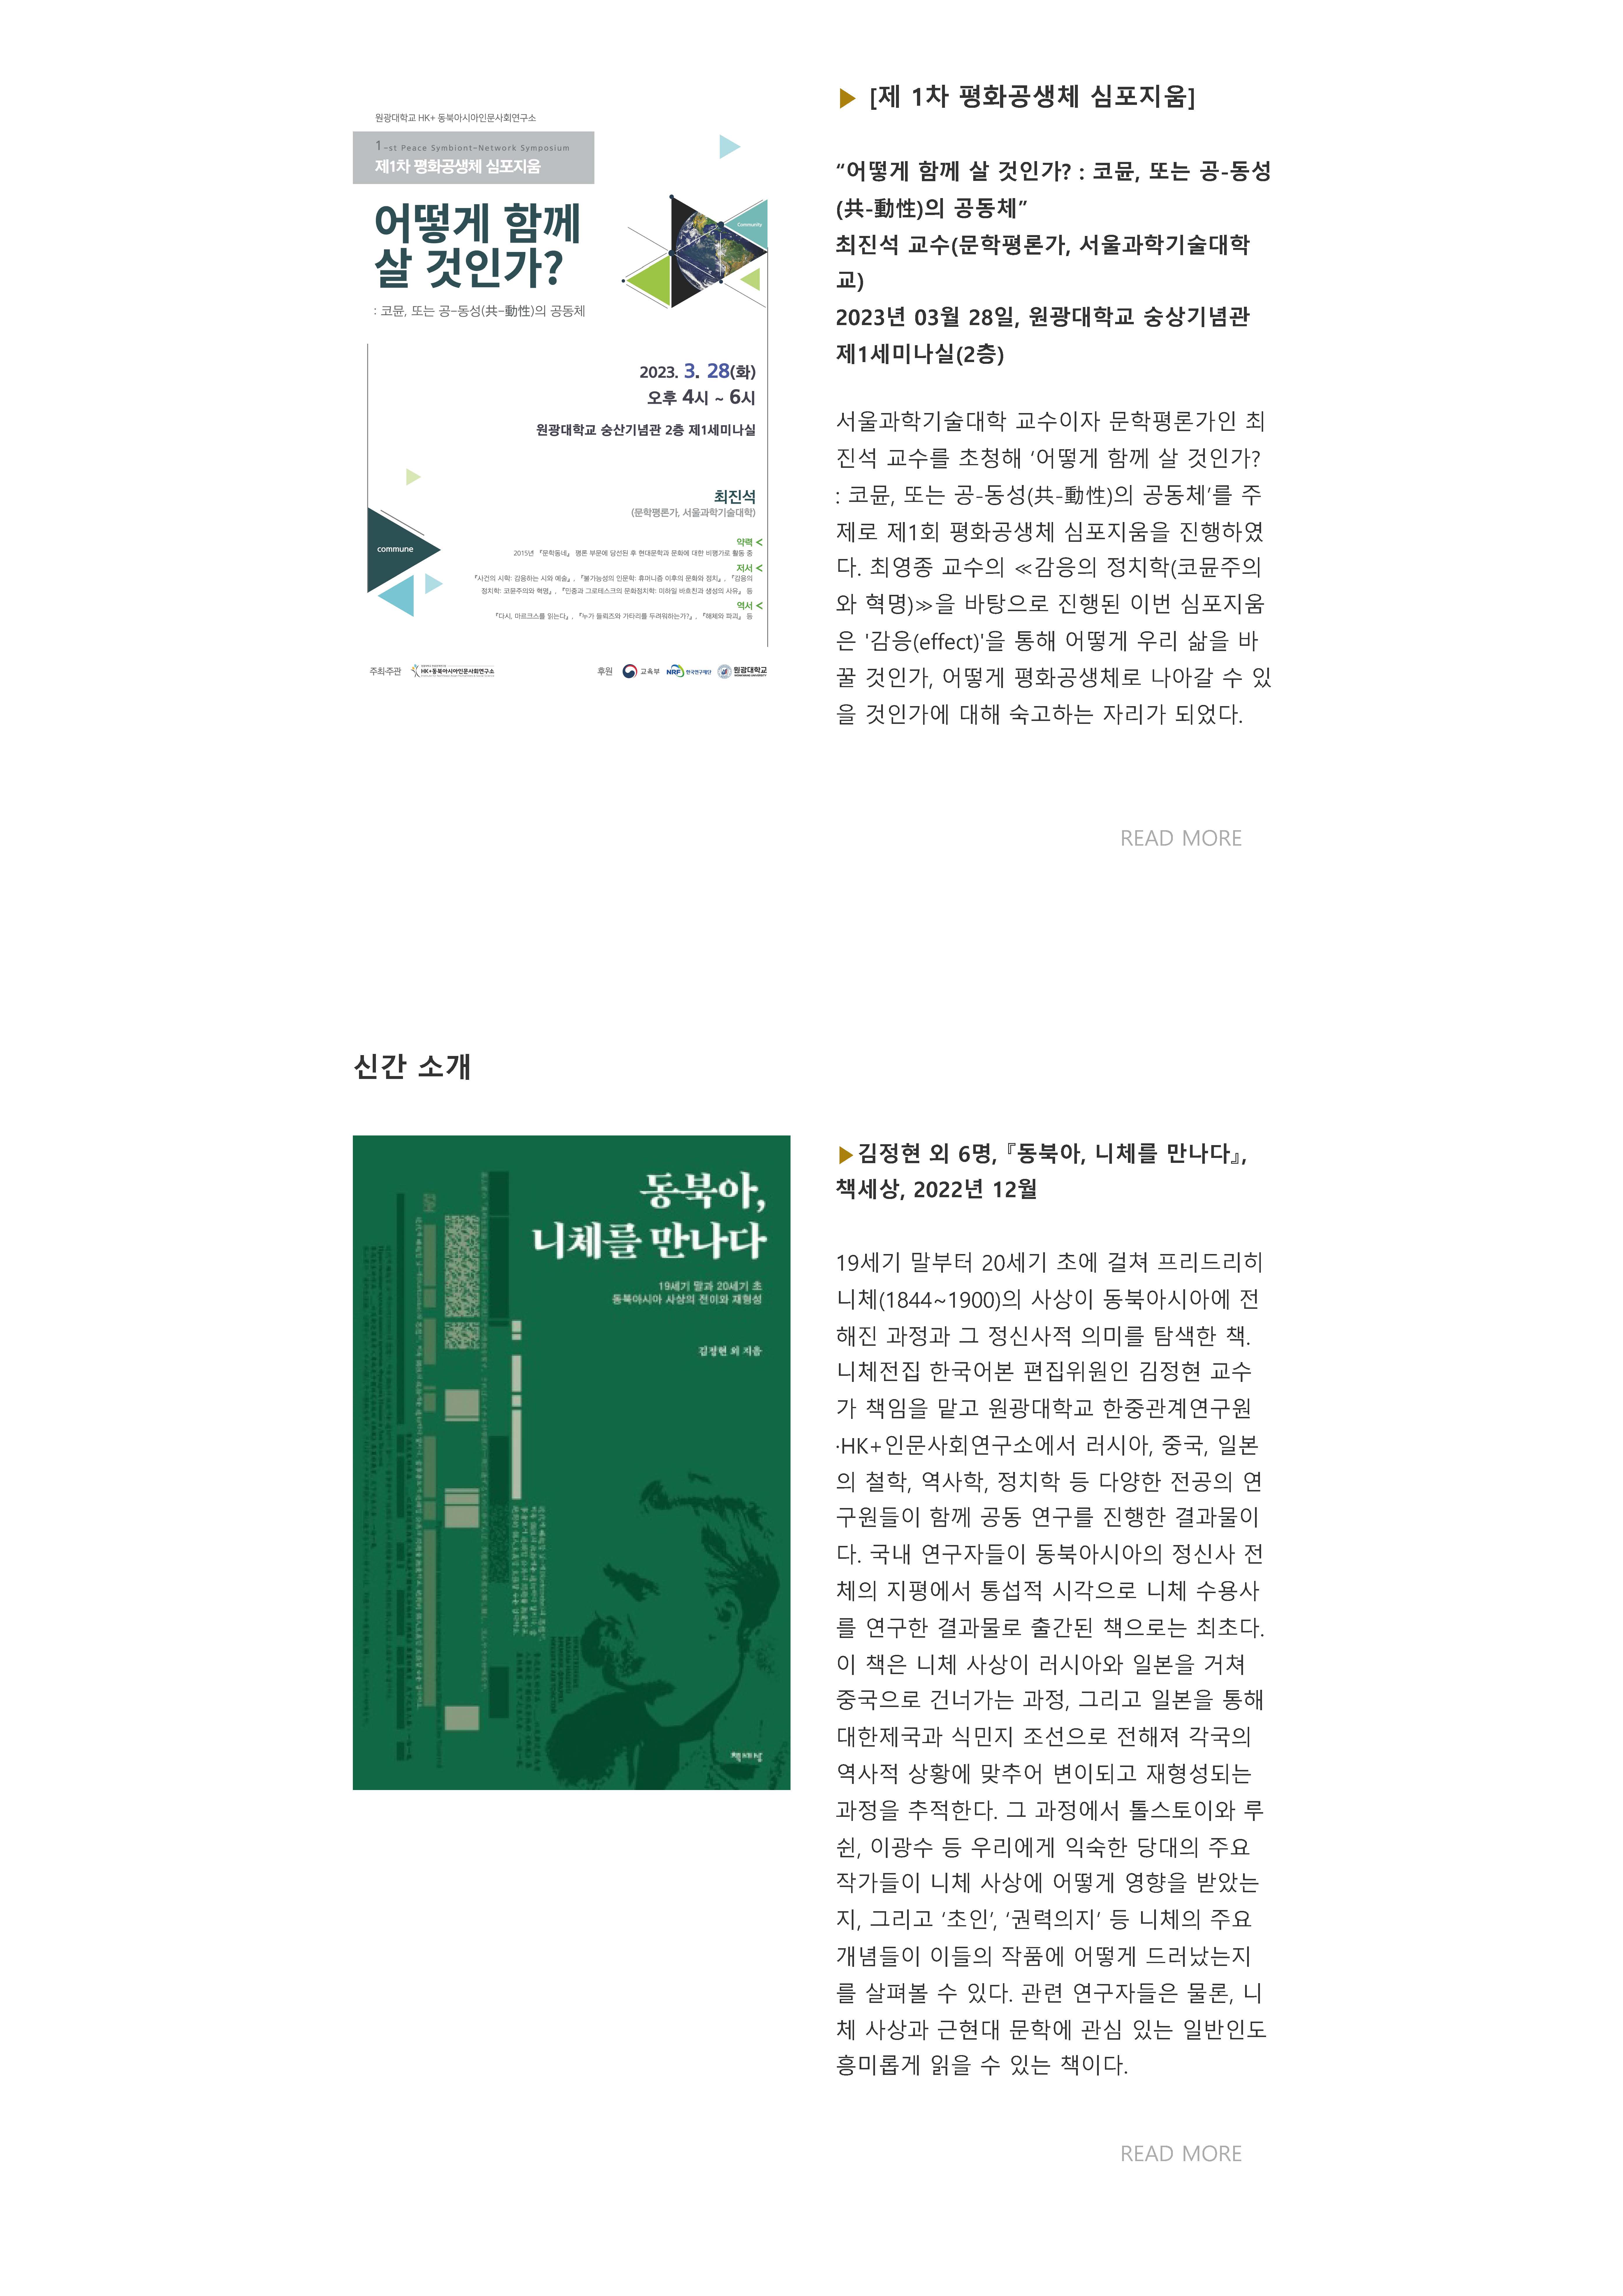 원광대 HK+ 동북아시아인문사회연구소 뉴스레터 VOL.14_페이지_05.jpg